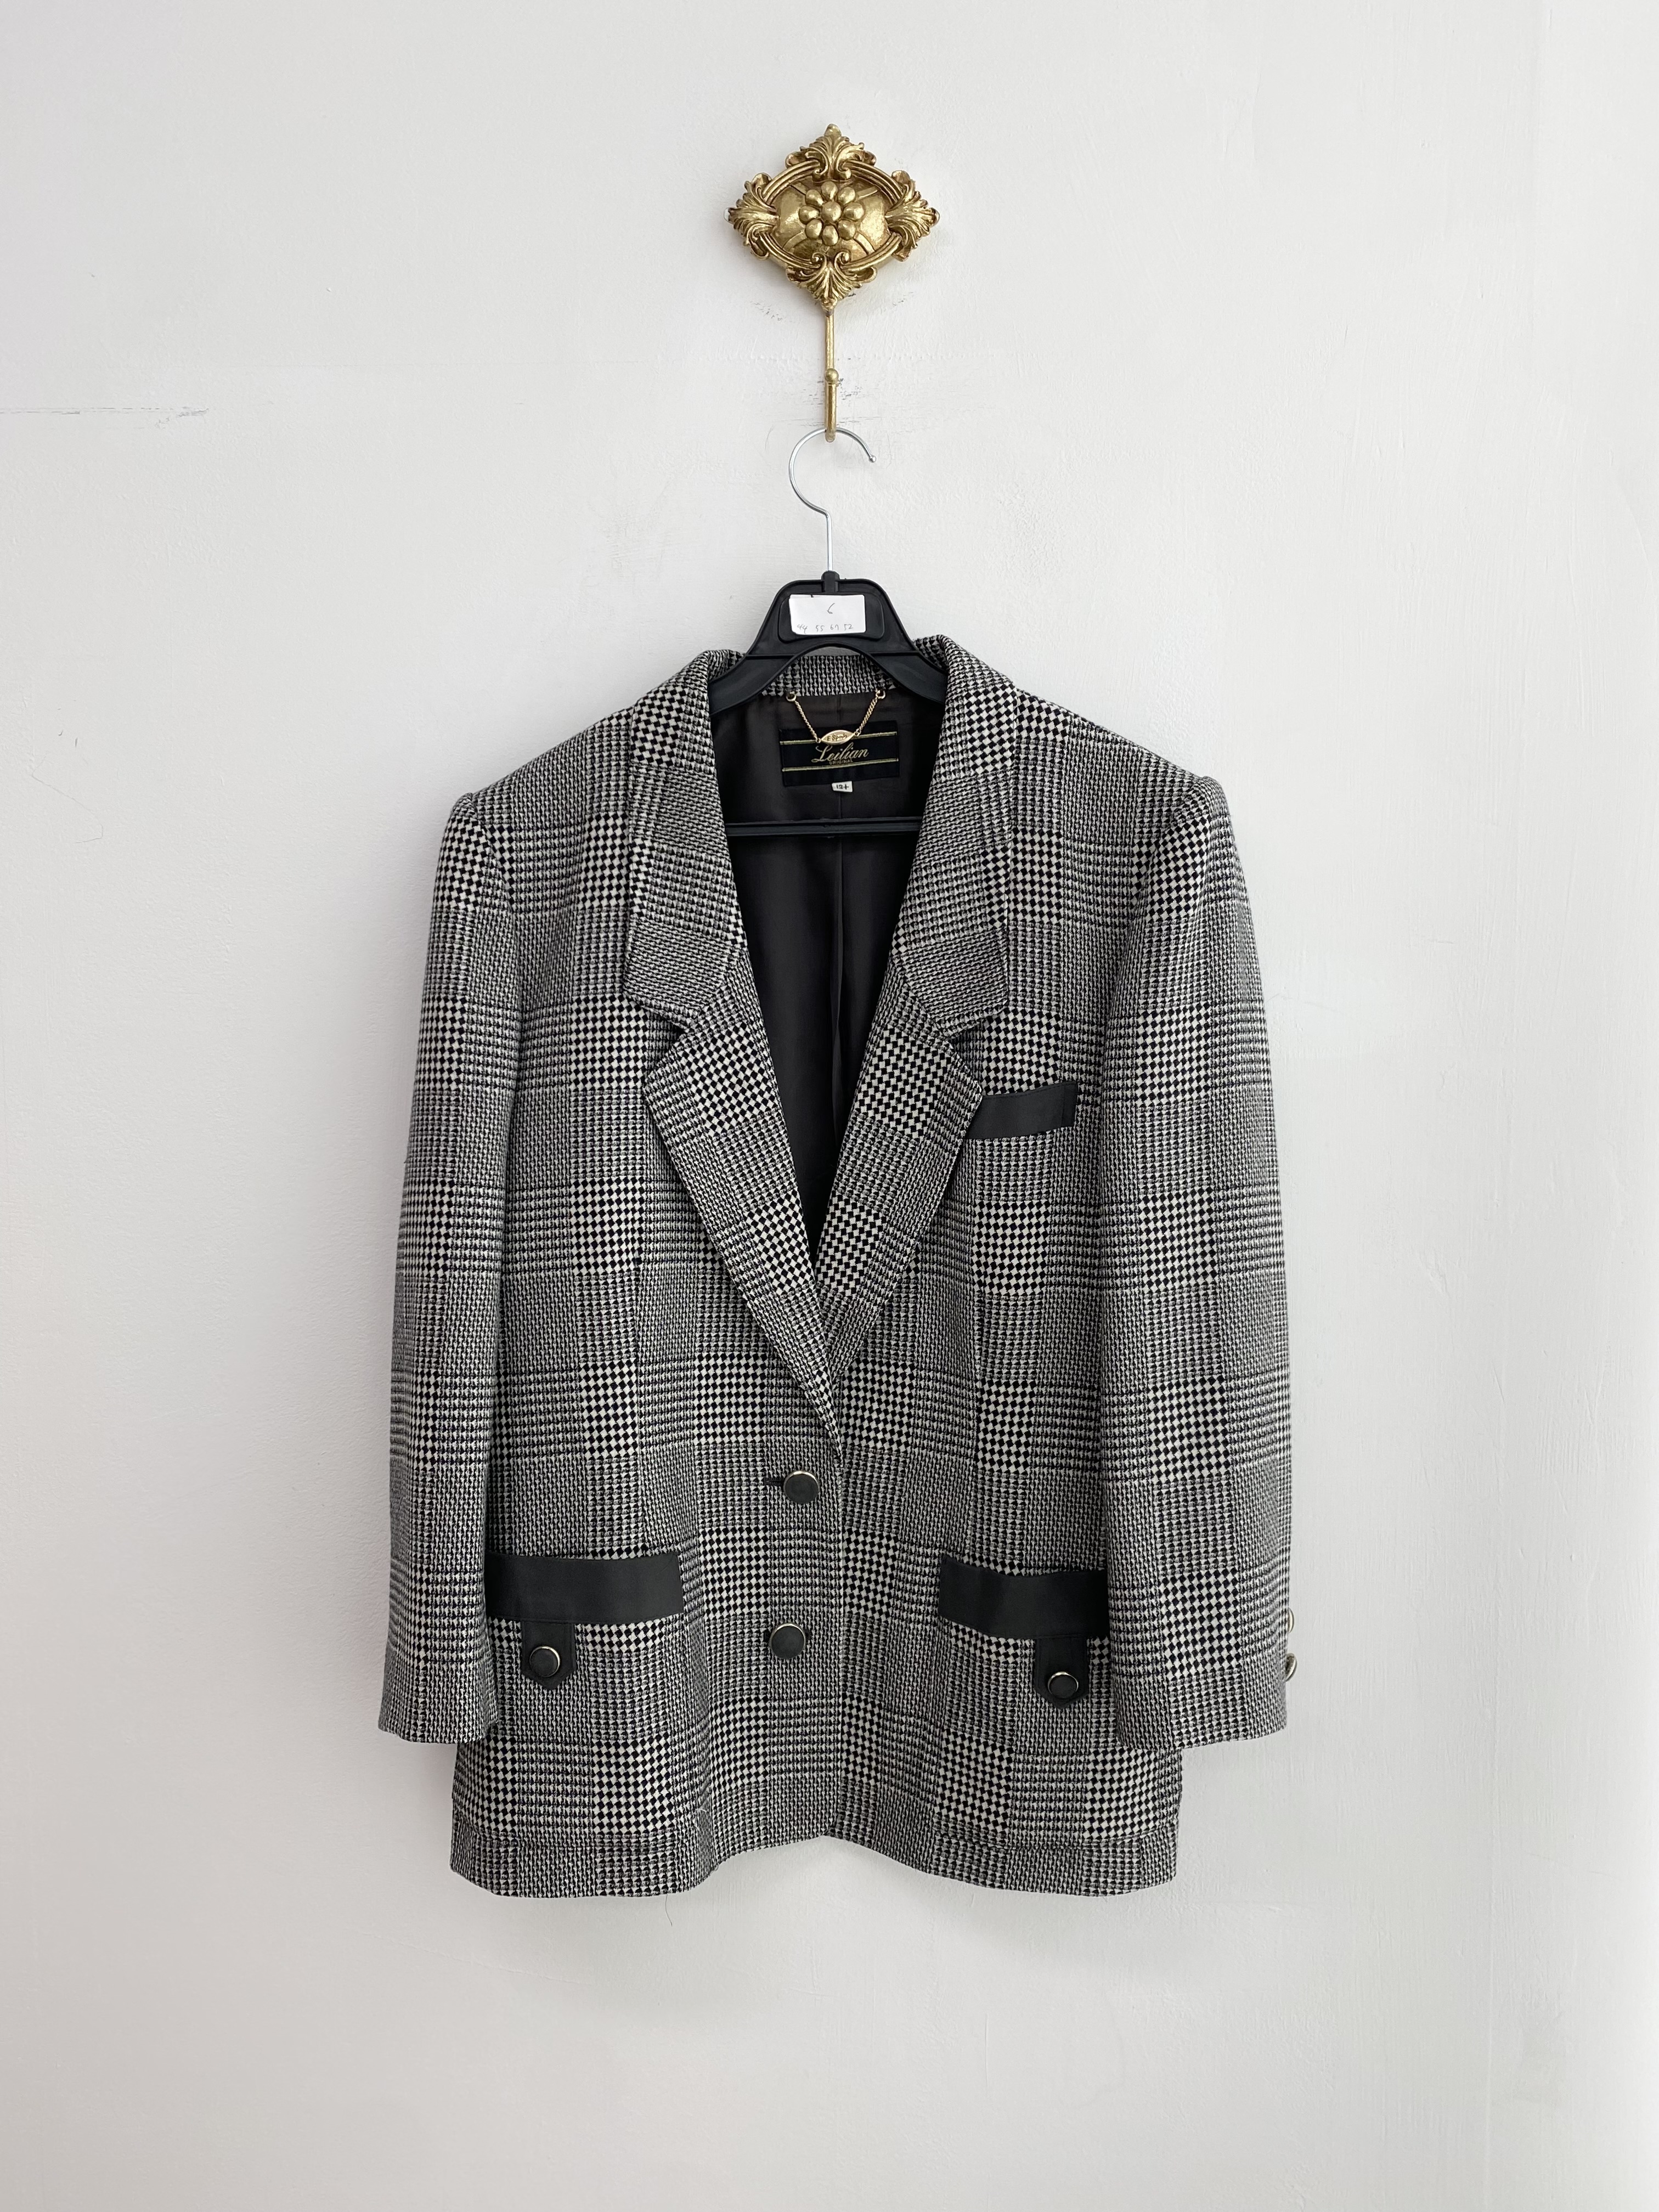 Black check pattern mix two button jacket